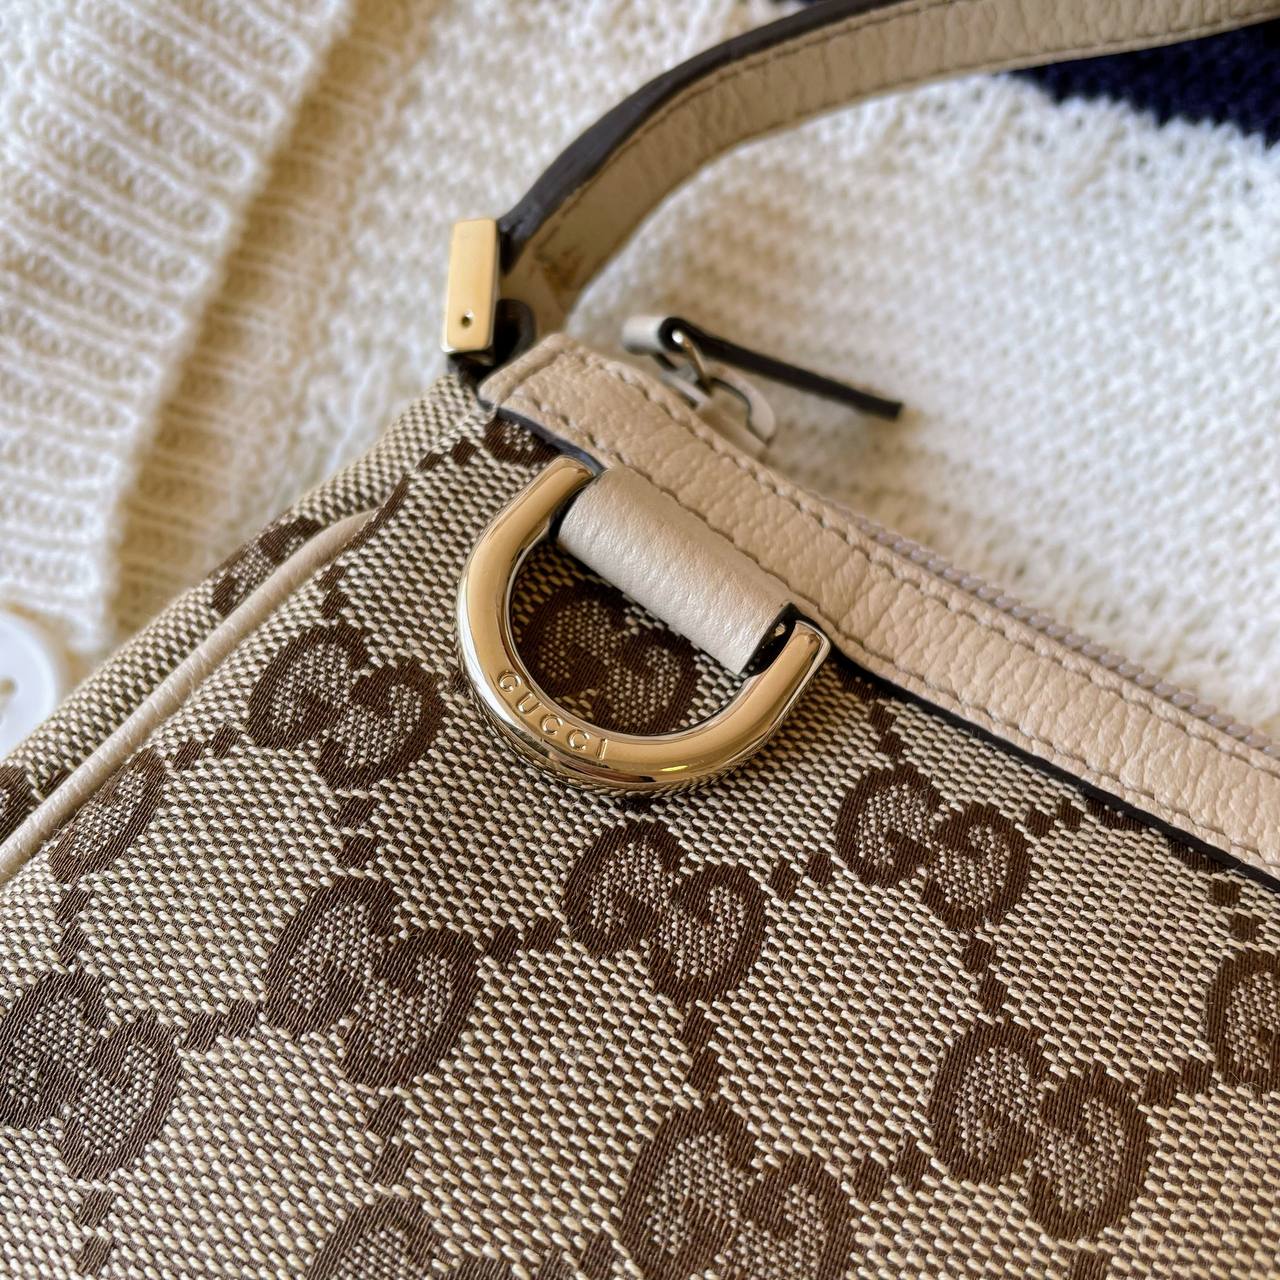 【 In-Stock 】Old Gucci Shoulder Bag